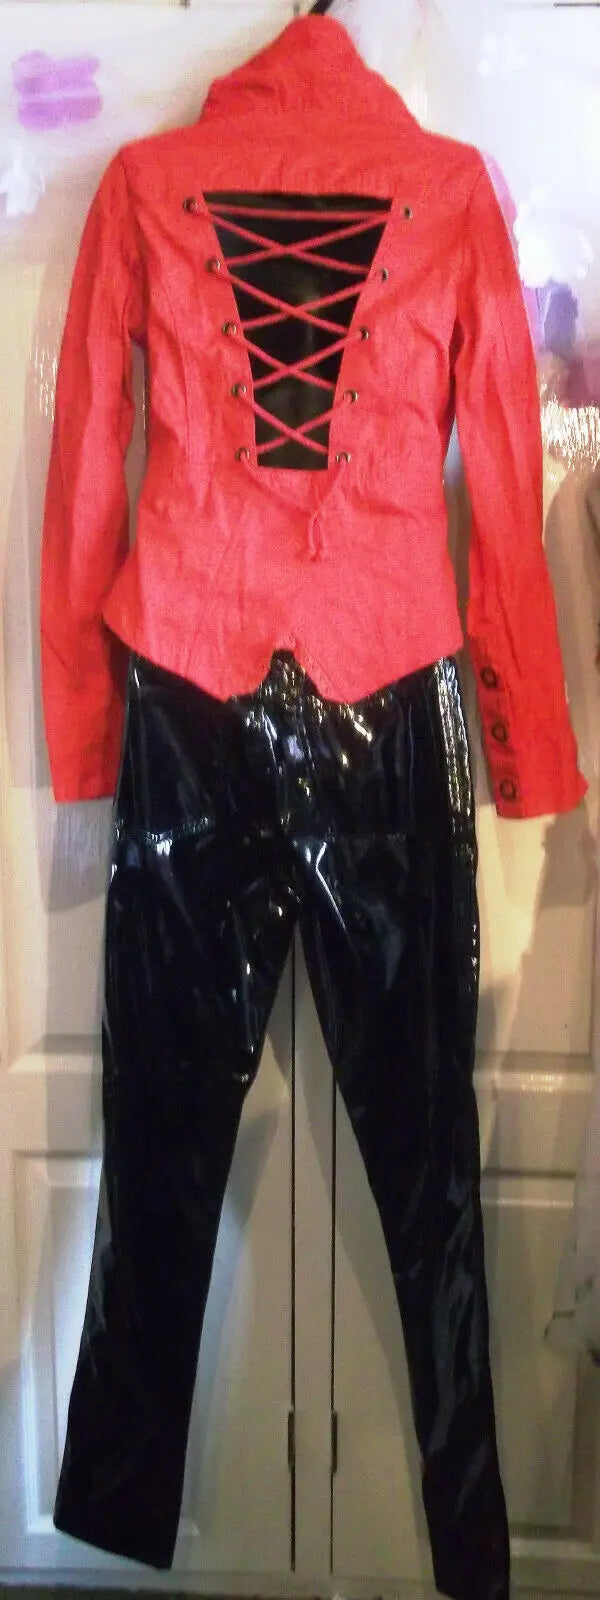 stunning new punkyfish size m red cropped jacket lace-up back-punk/goth/boho Punkyfish